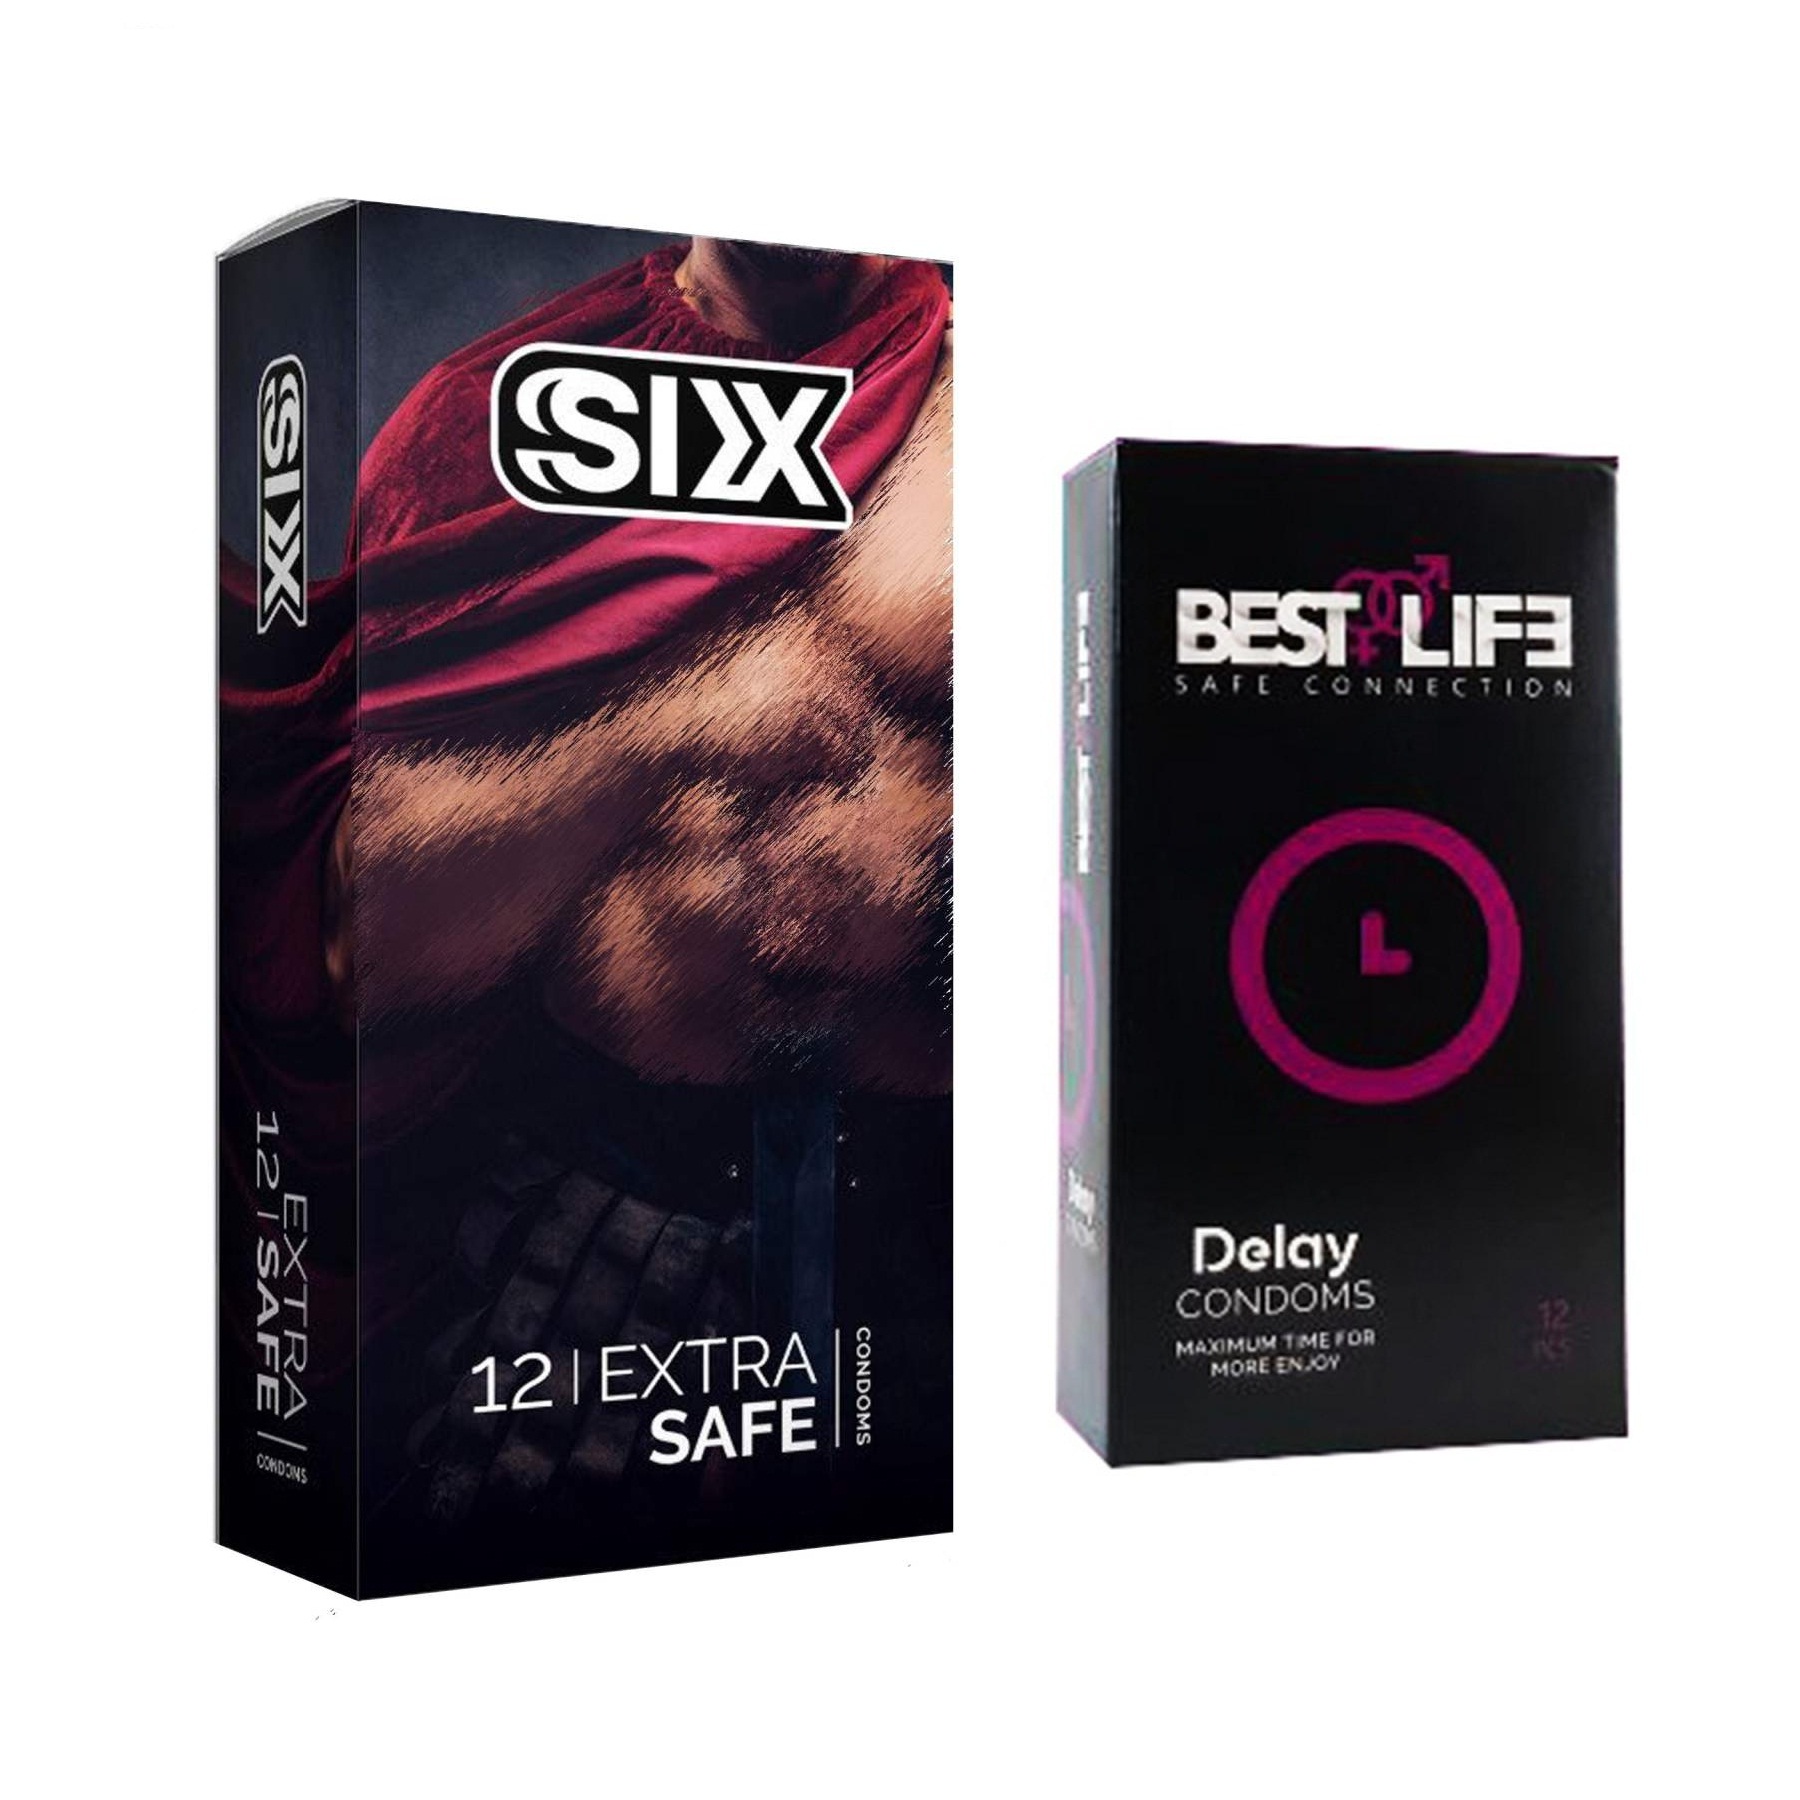 کاندوم سیکس مدل Max Safety بسته 12 عددی به همراه کاندوم بست لایف مدل Delay بسته 12 عددی